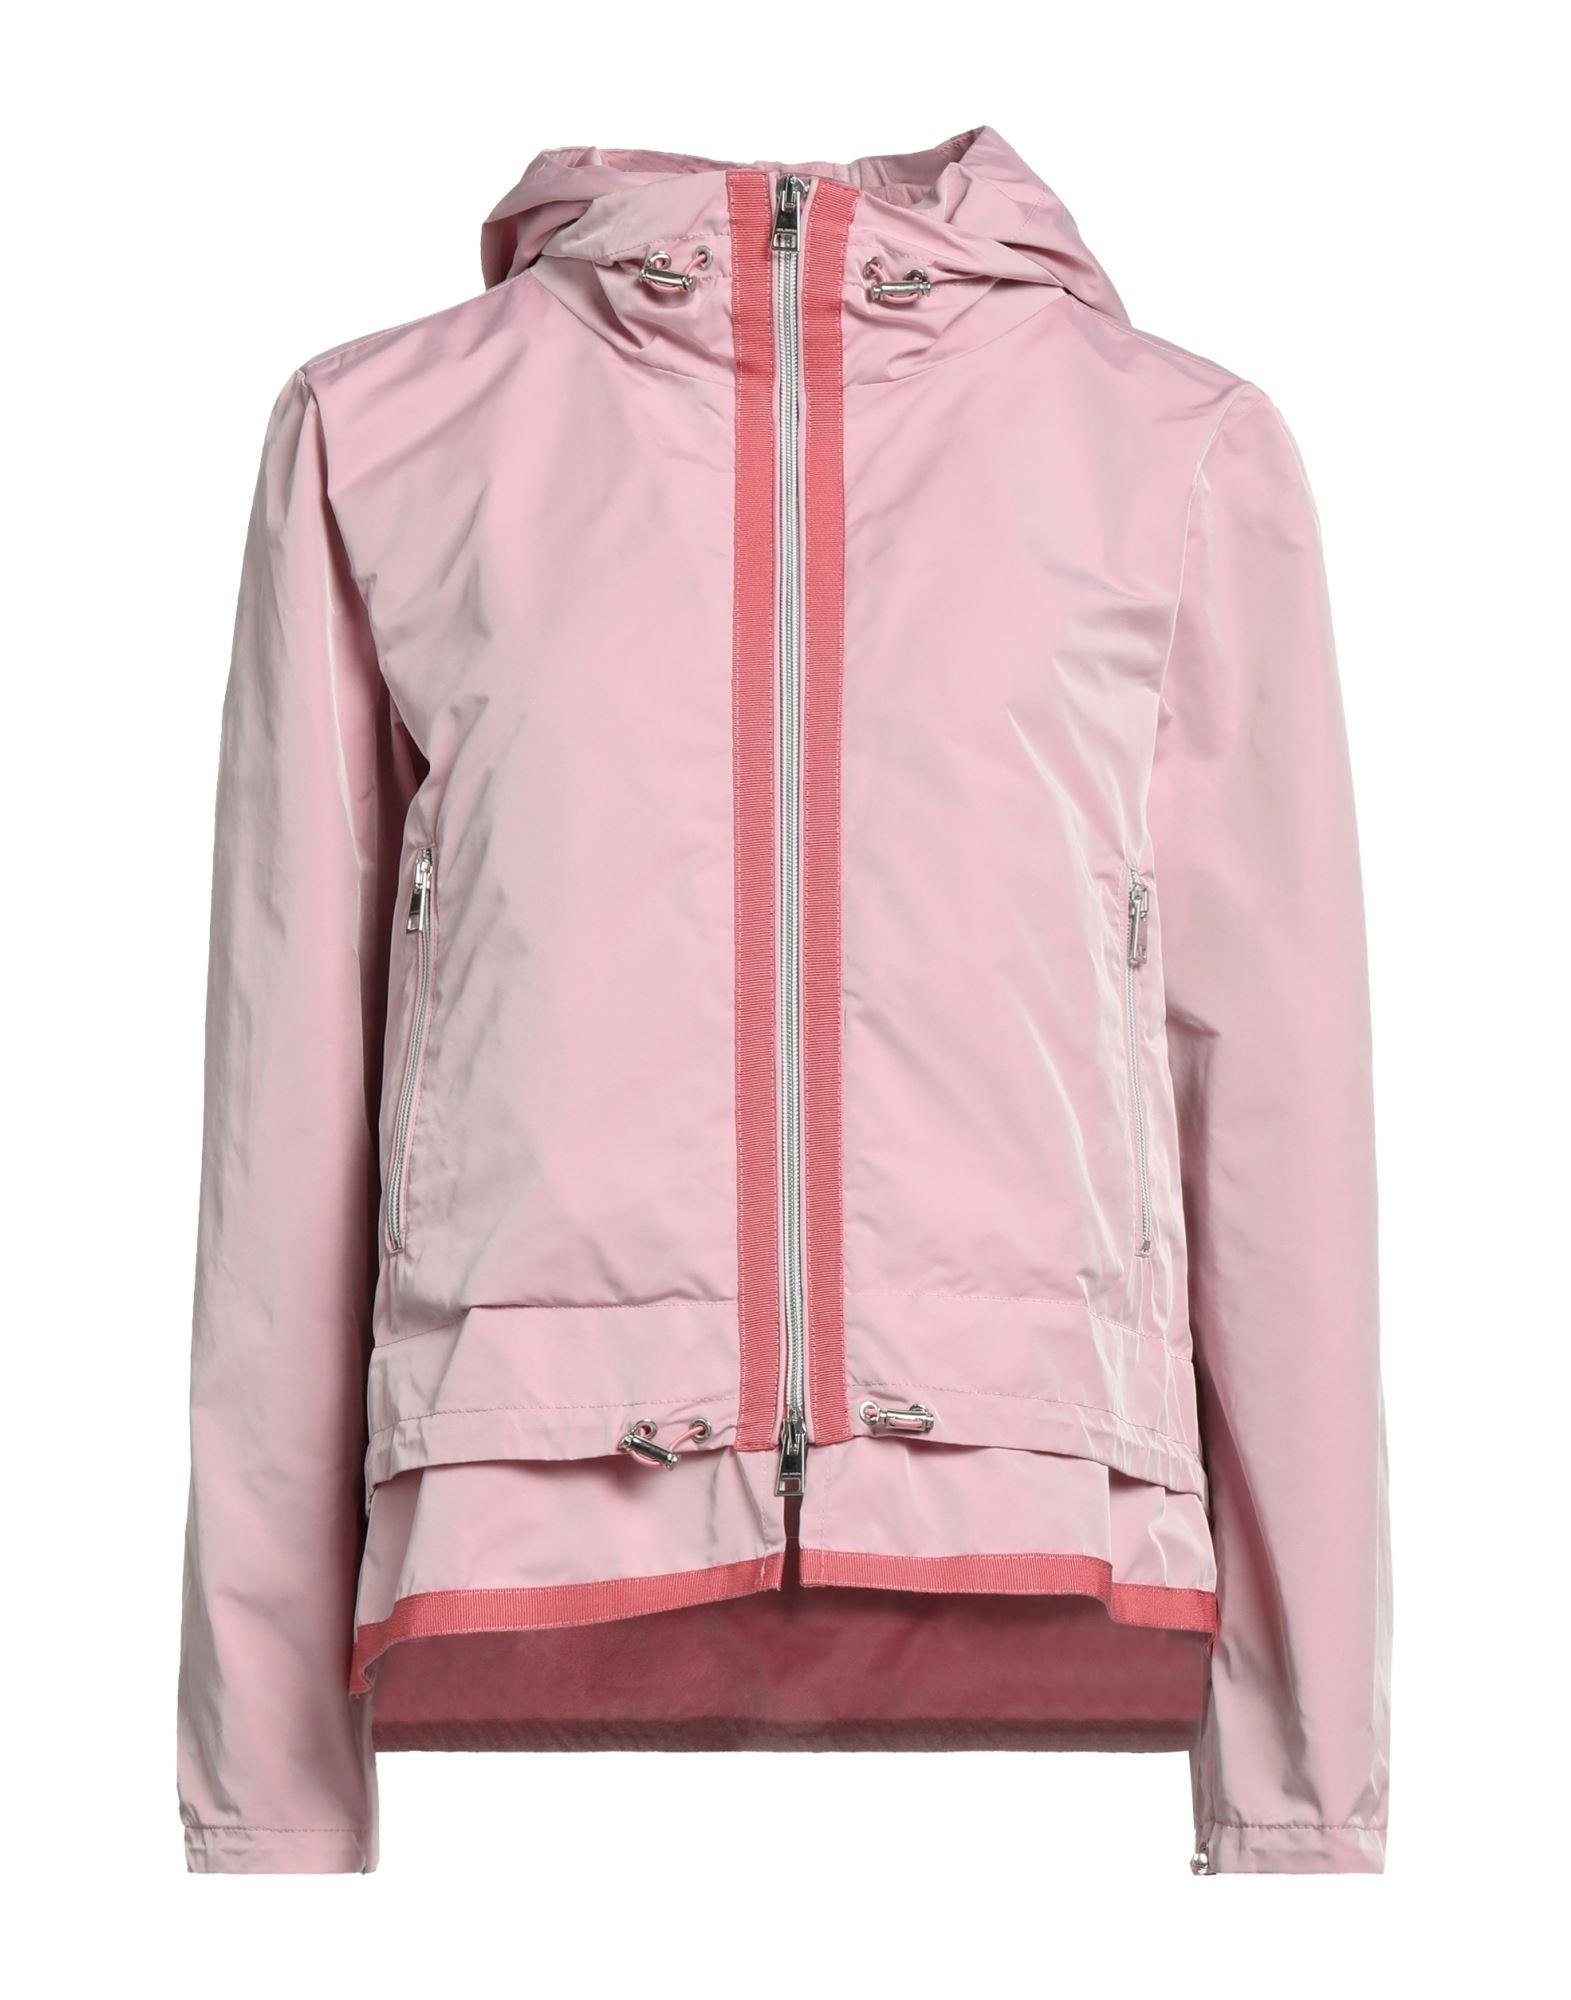 Jan Mayen Jackets In Pink